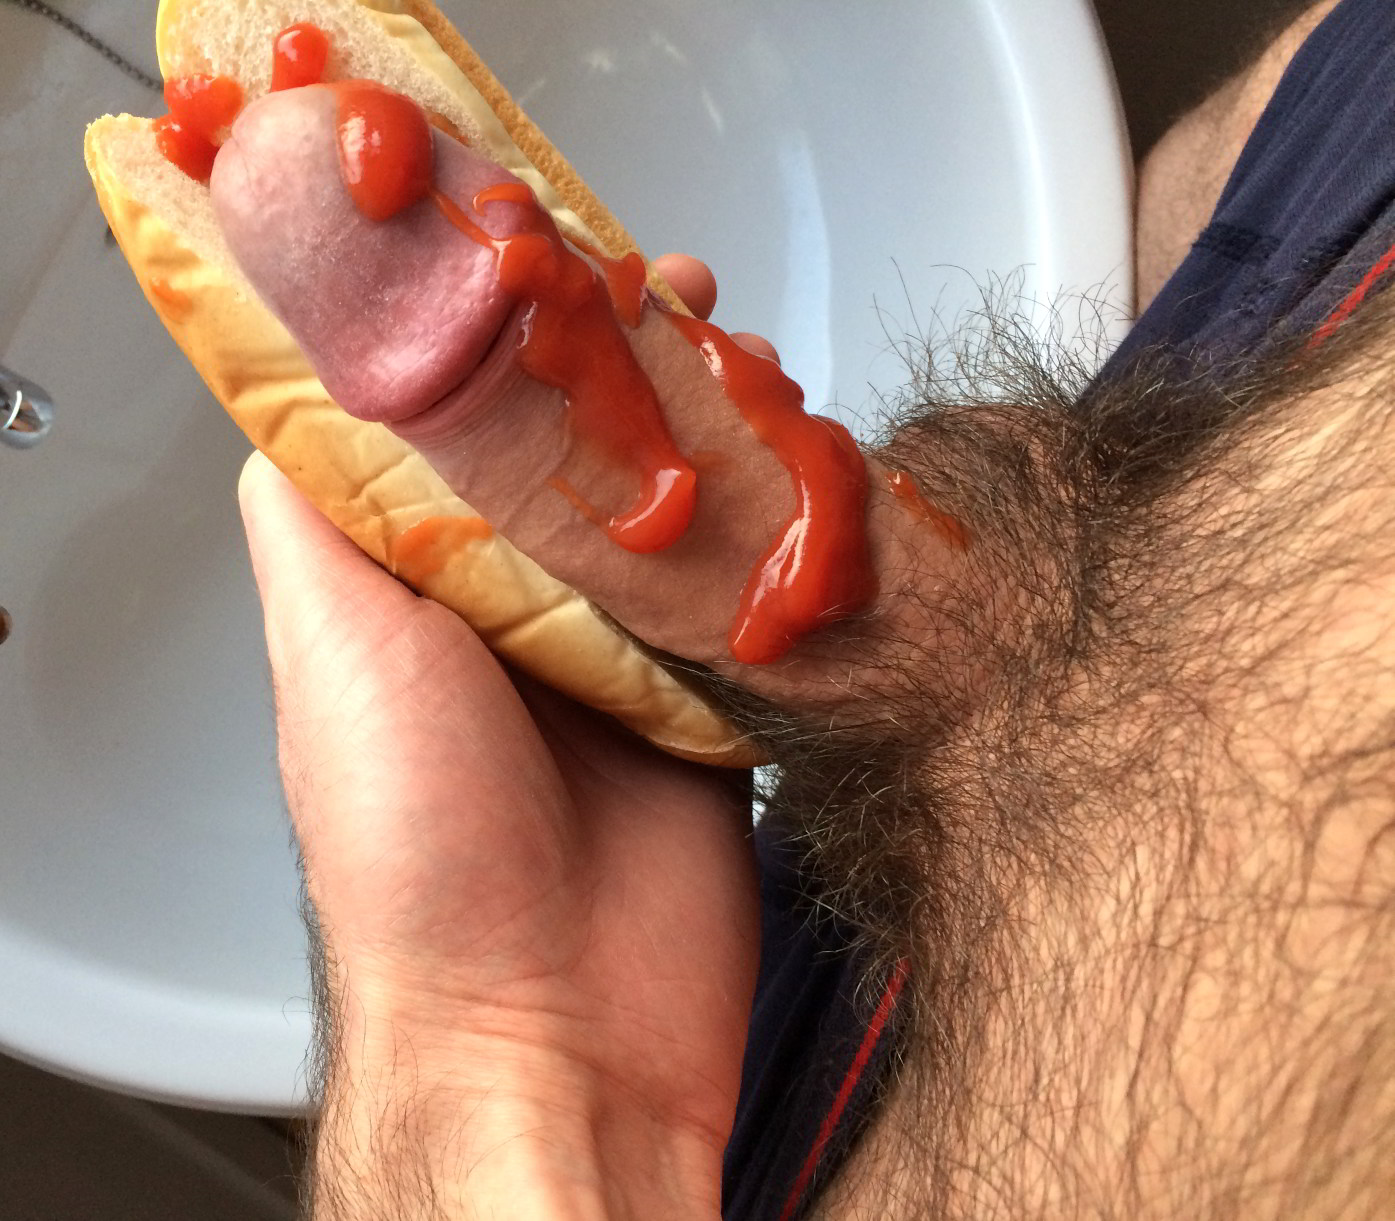 Cock in hotdog bun